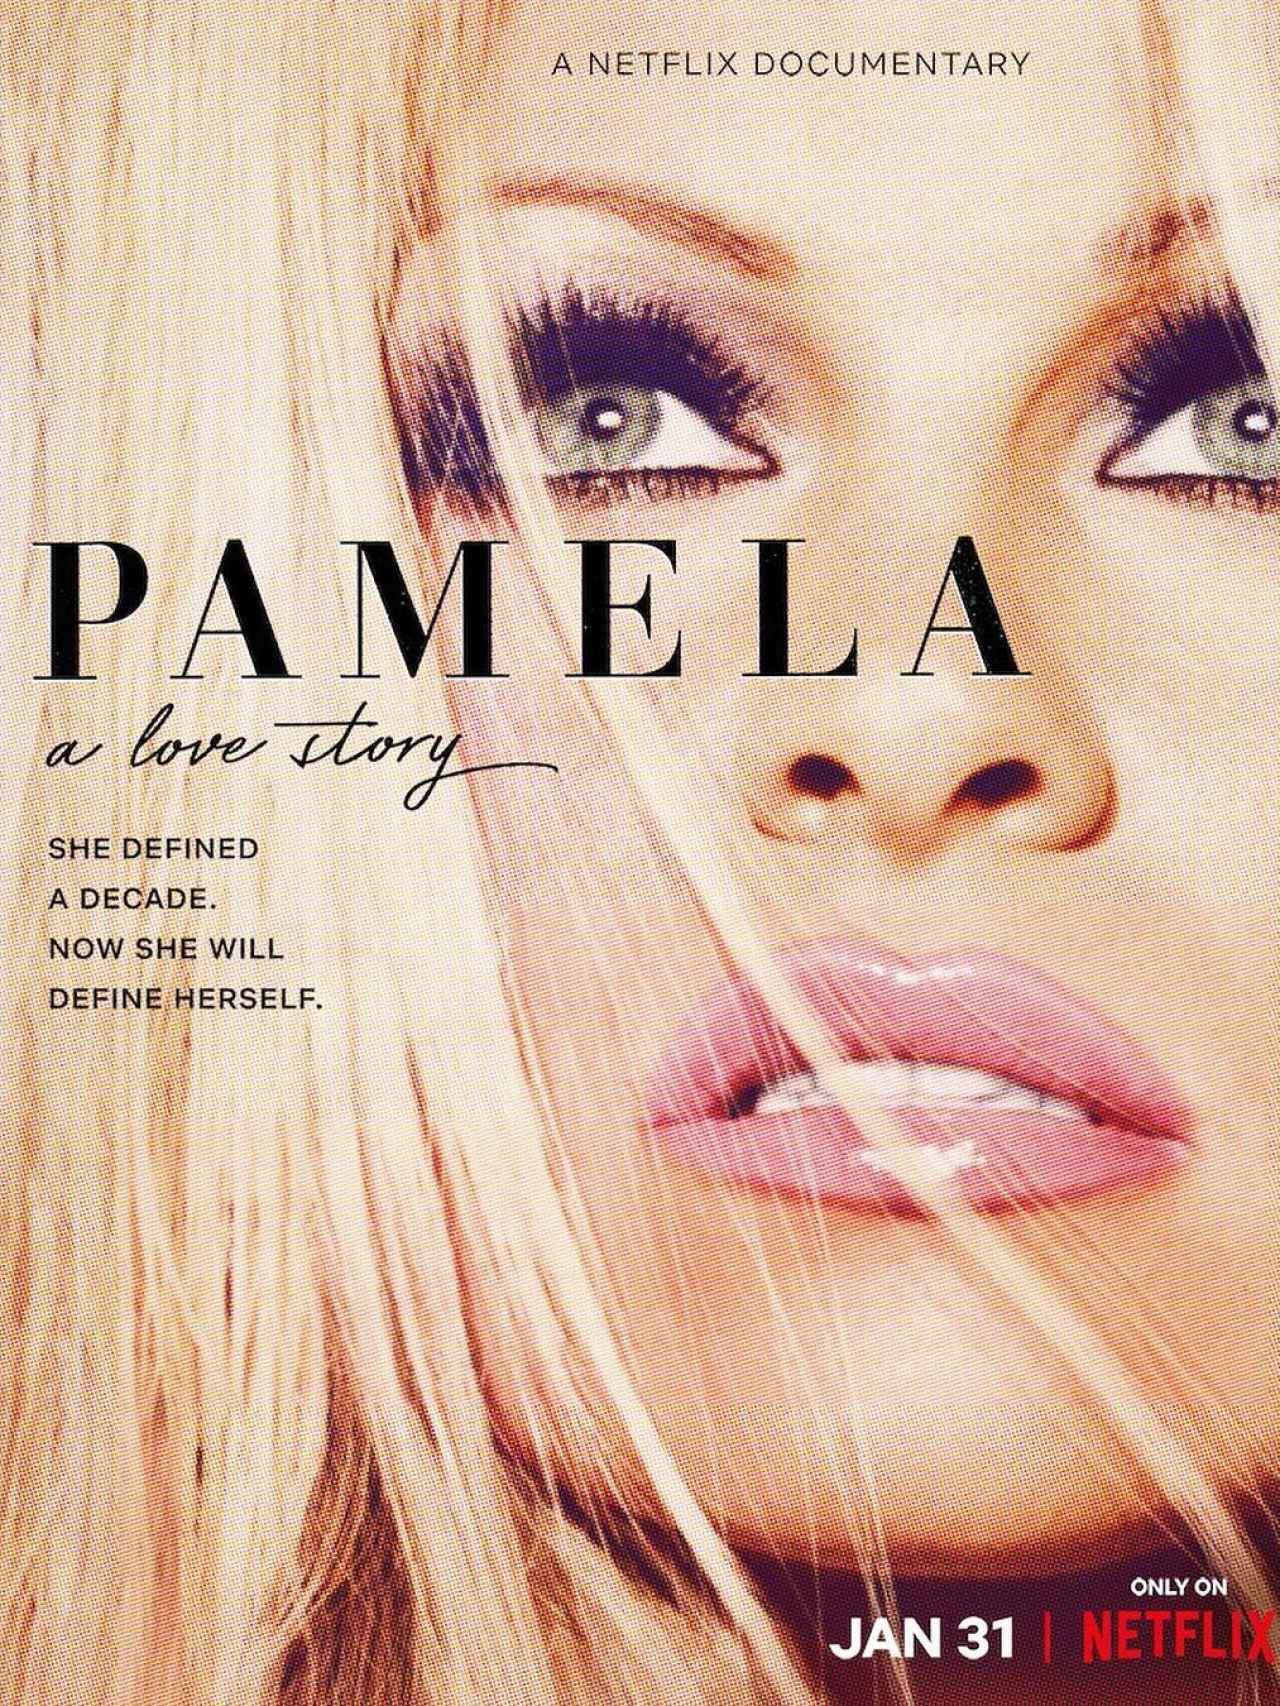 La imagen y la portada del documental de Pamela Anderson en Netflix.